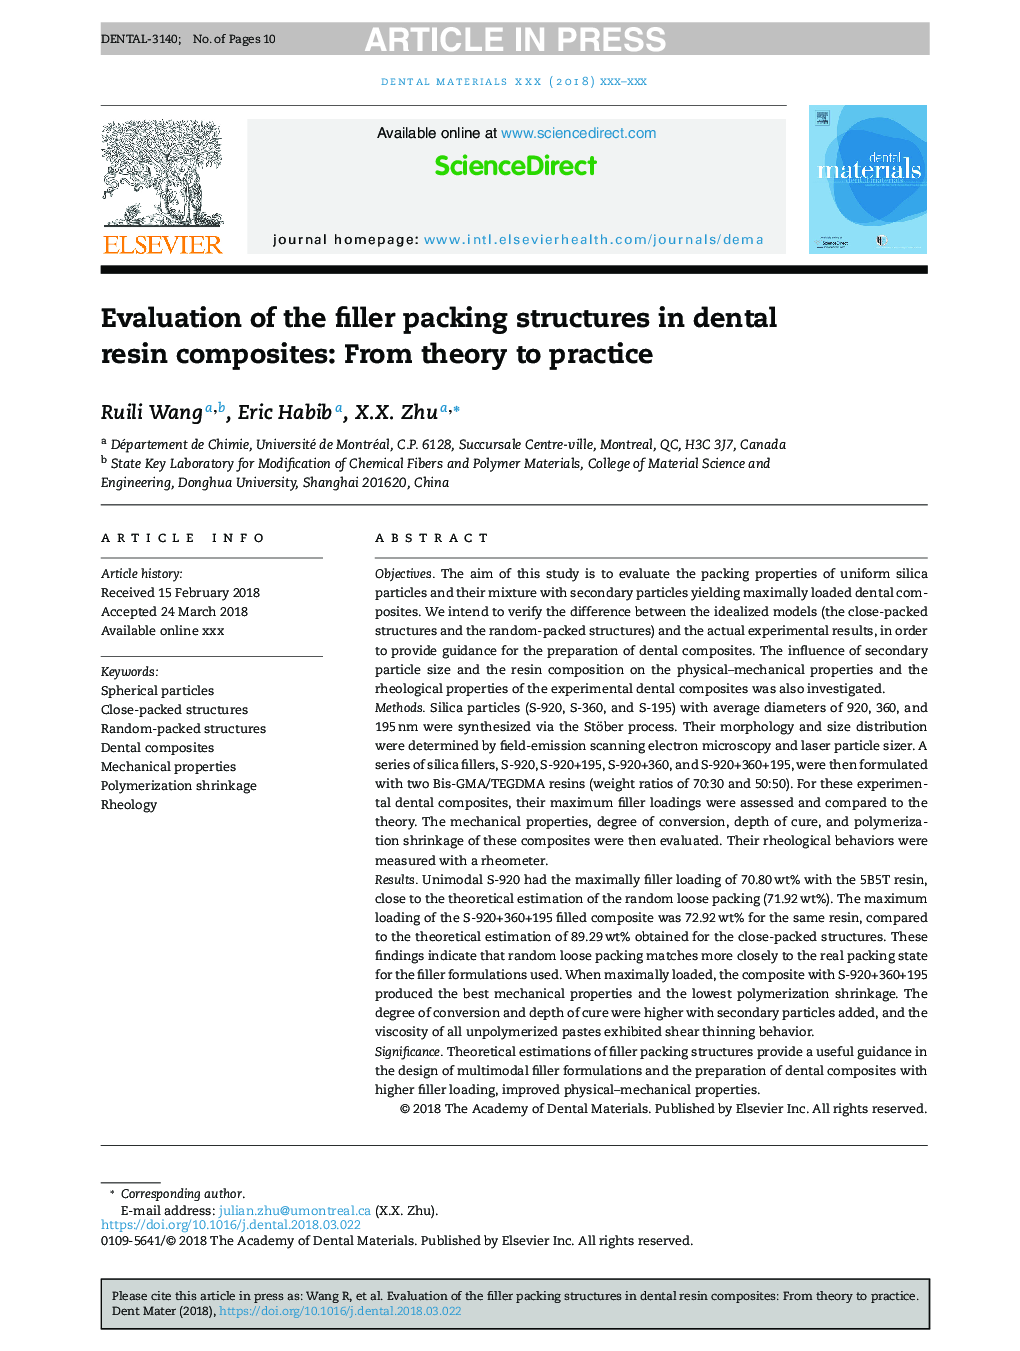 بررسی ساختار بسته بندی پرکننده در کامپوزیت رزین دندان: از نظر به عمل 